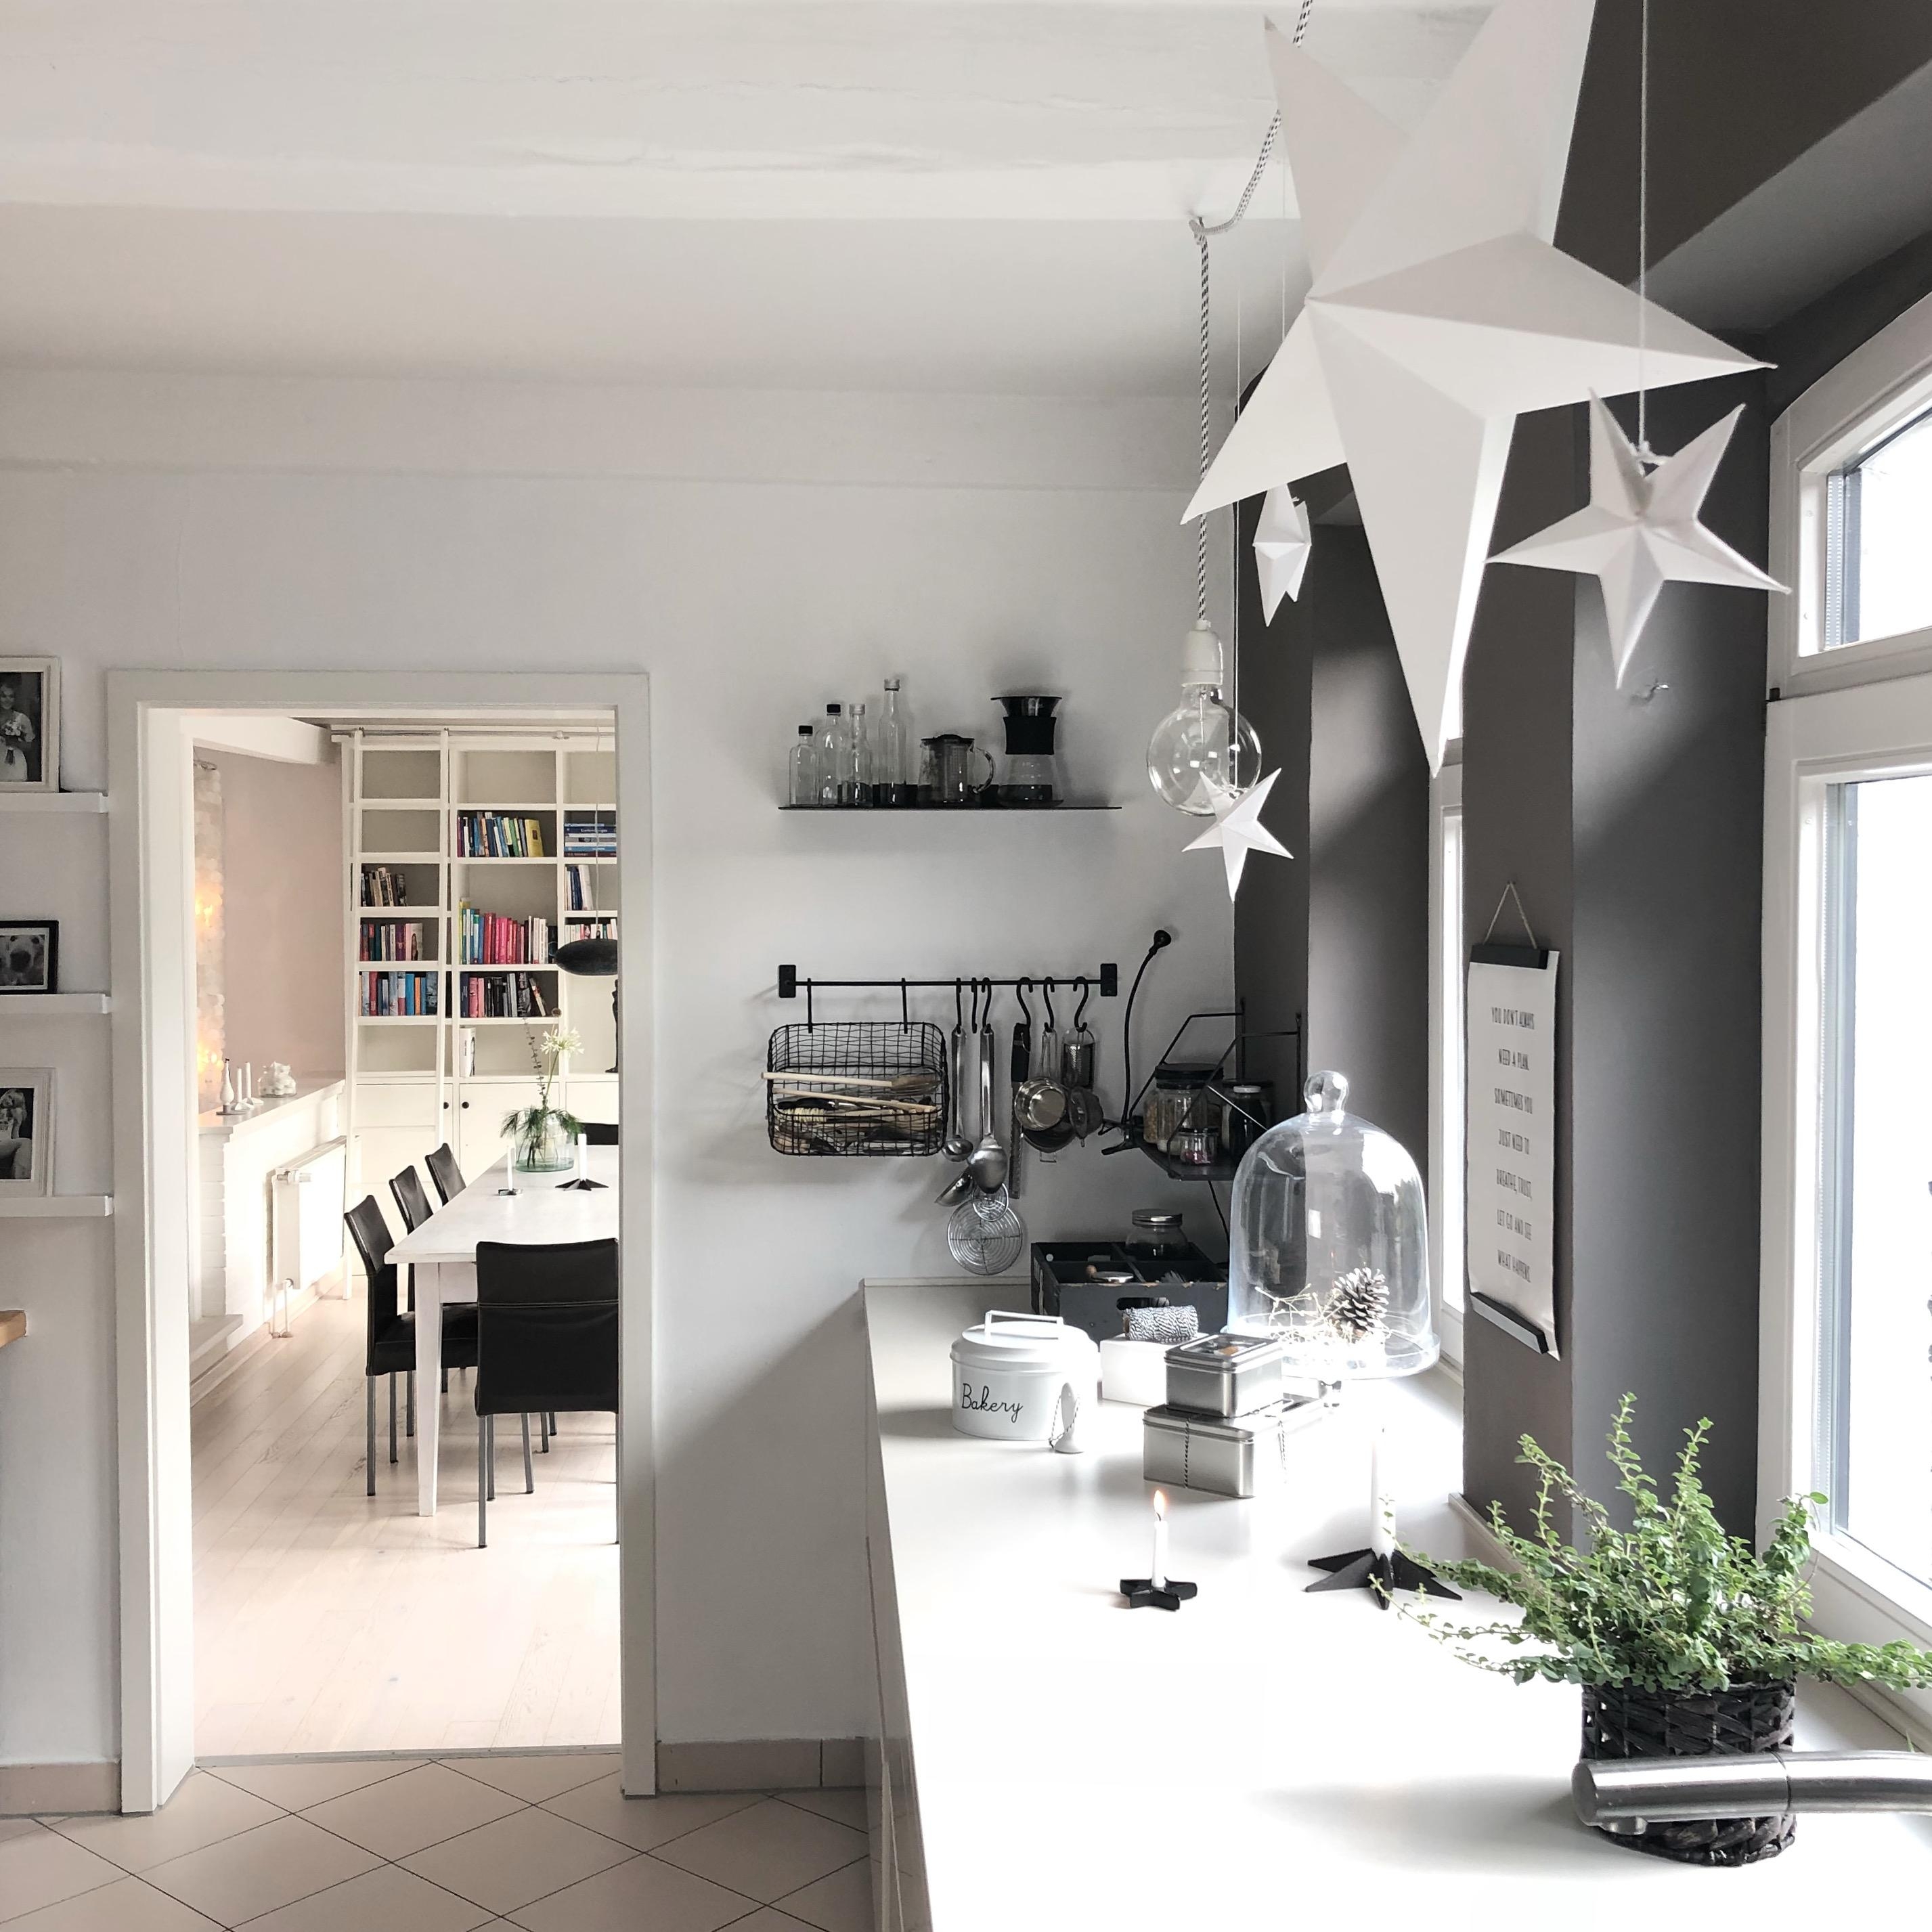 #küche #scandinavisch #sterne #weihnachtsdeko #blackandwhite #minimalistisch 

Noch mehr Sterne ⭐️ 